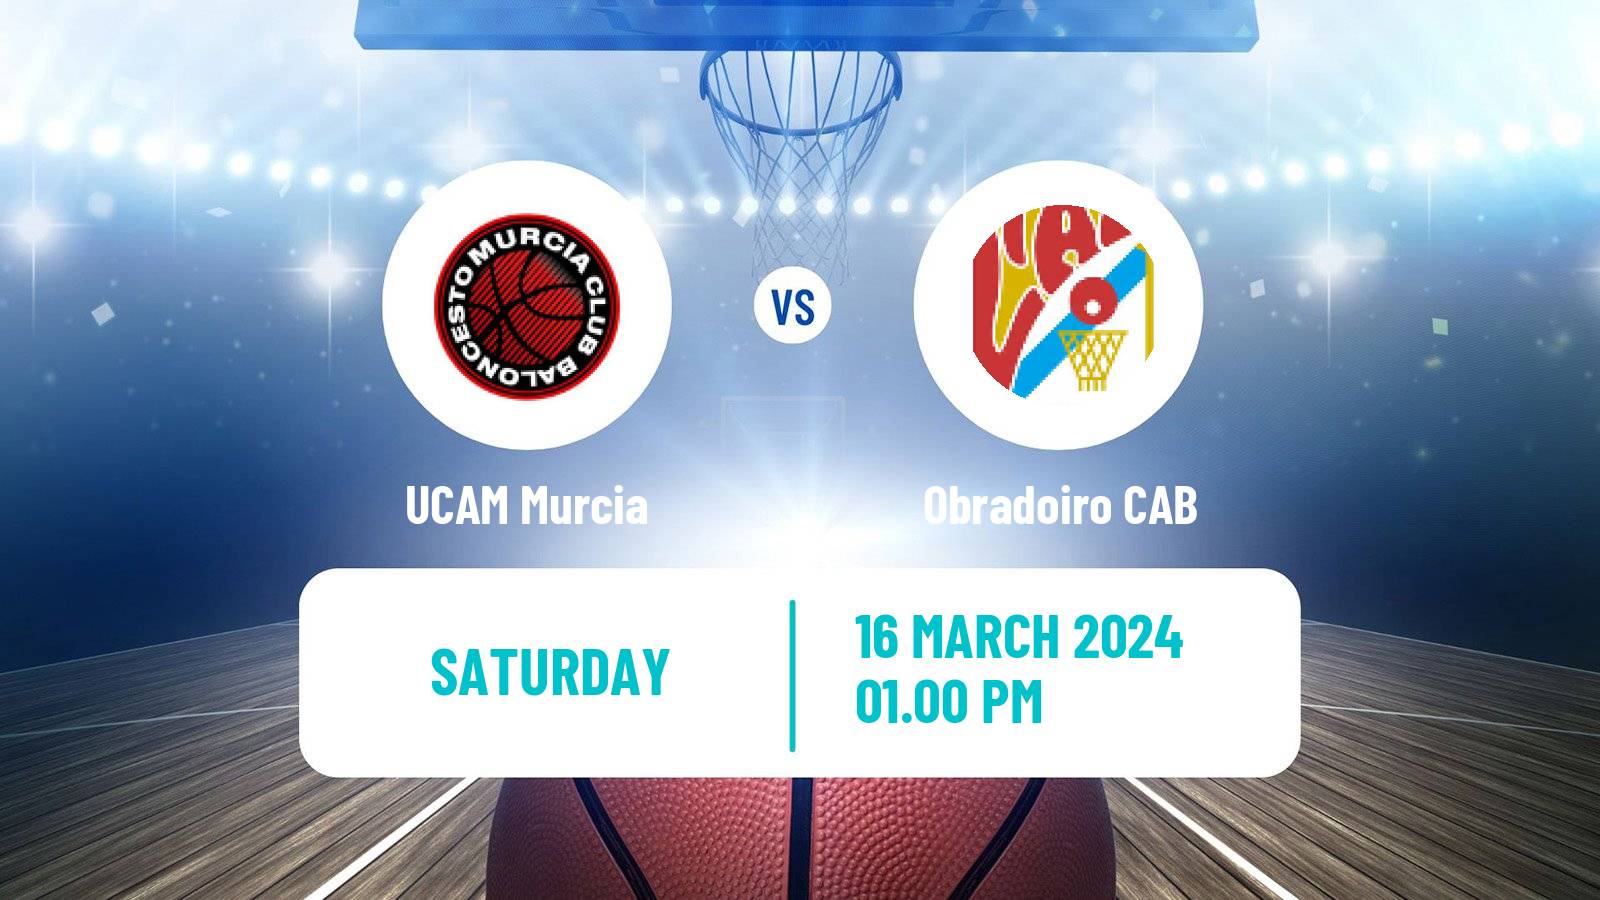 Basketball Spanish ACB League UCAM Murcia - Obradoiro CAB